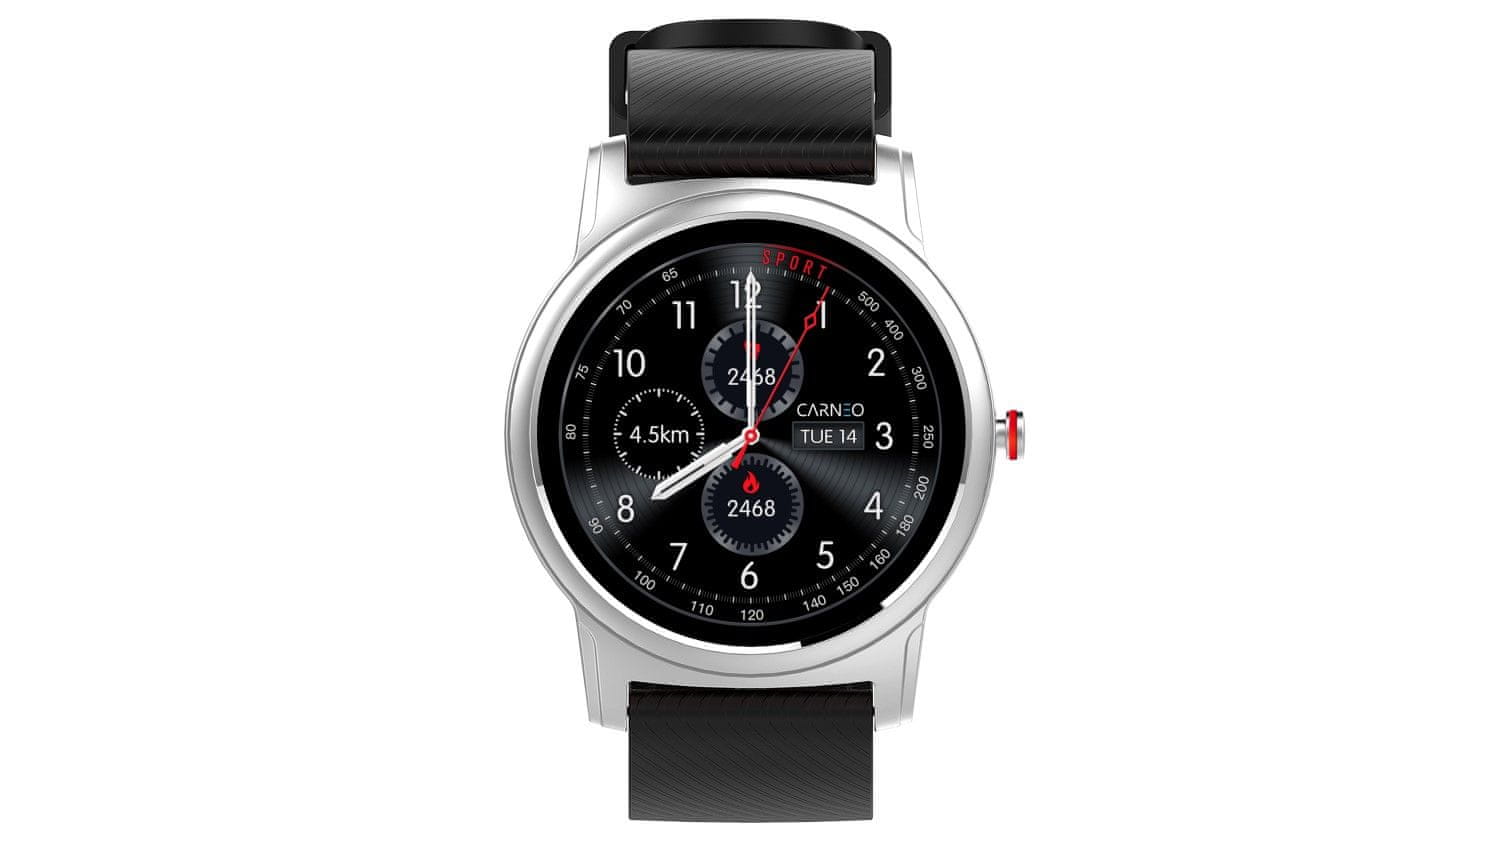 Chytré hodinky Carneo Prime Platinum, sledování tepu, kalorií, vzdáleností, kroků, spánku, pitného režimu, telefonování, SMS, notifikace